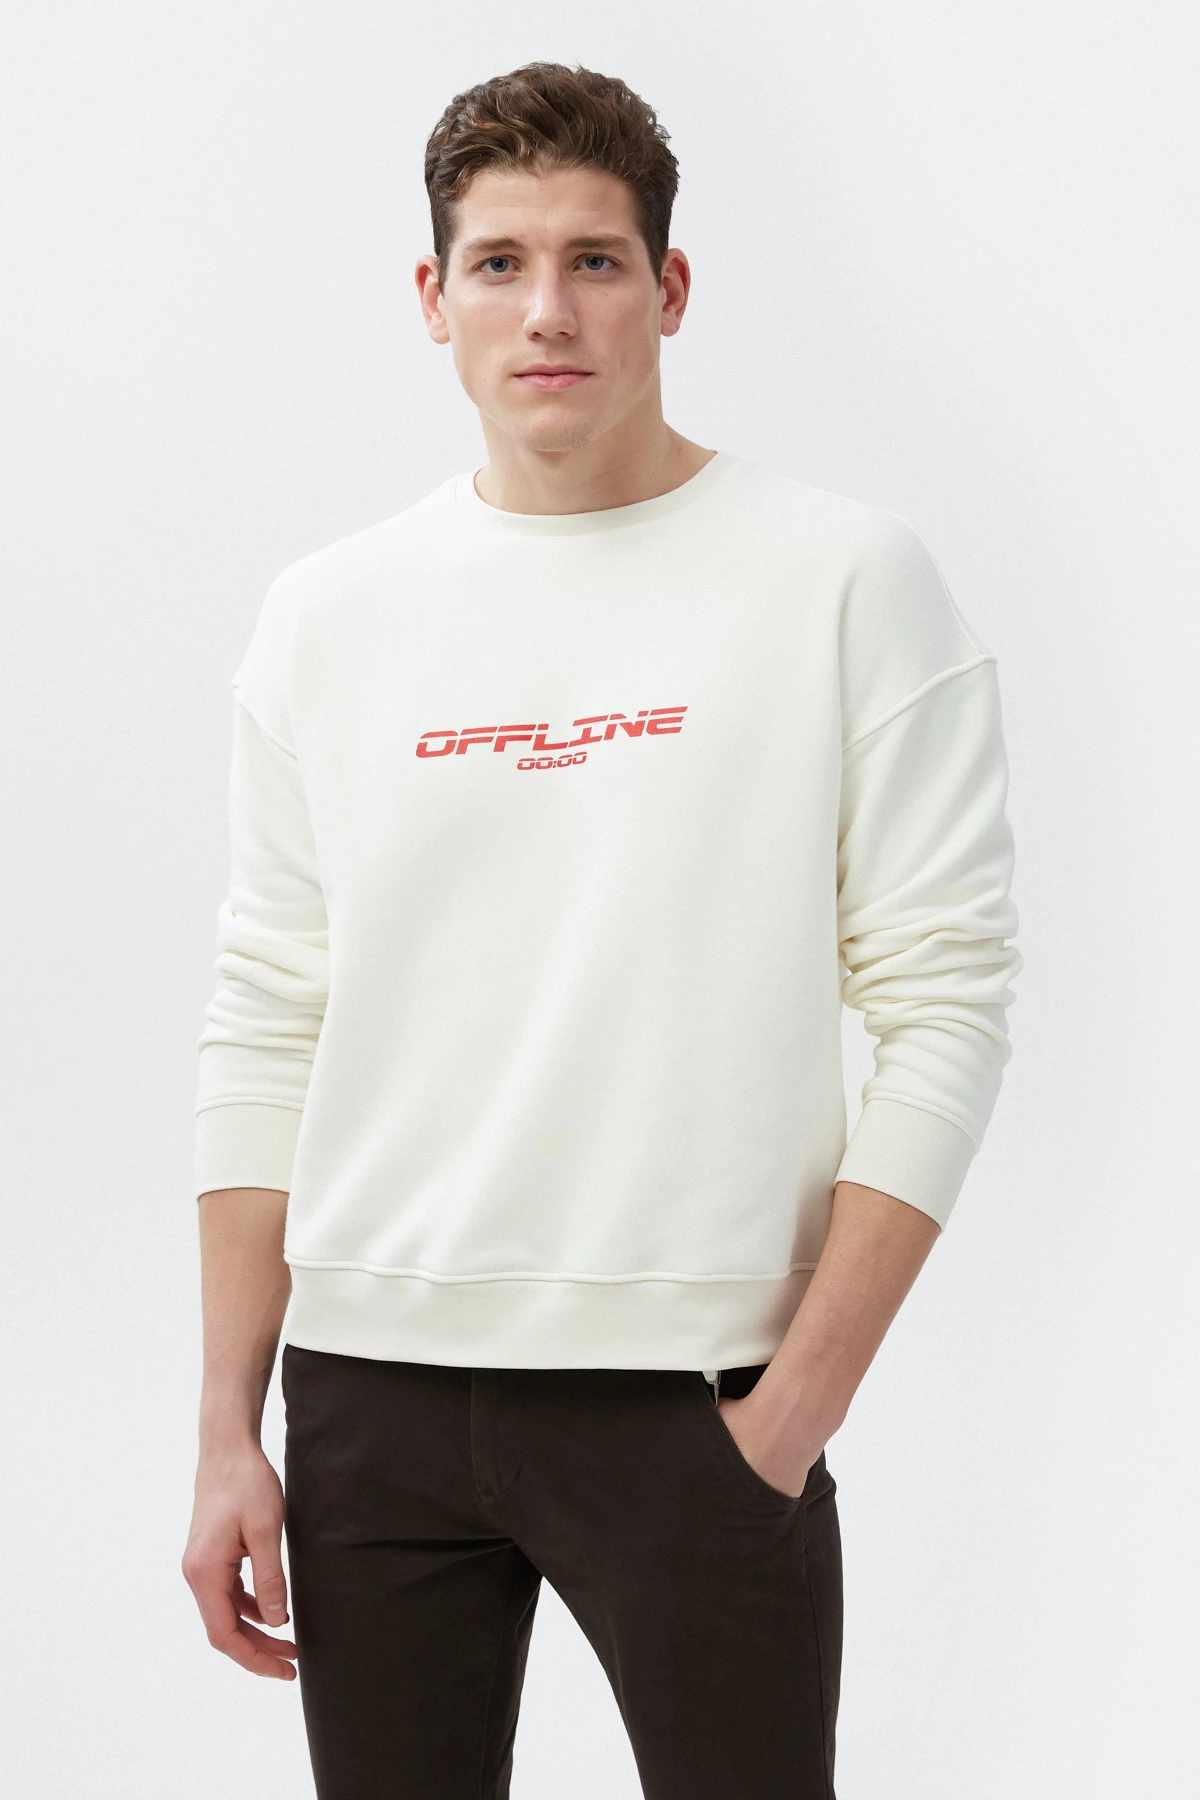 Vanilla elongated unisex sweatshirt "OFFLINE" on fleece, photo 1